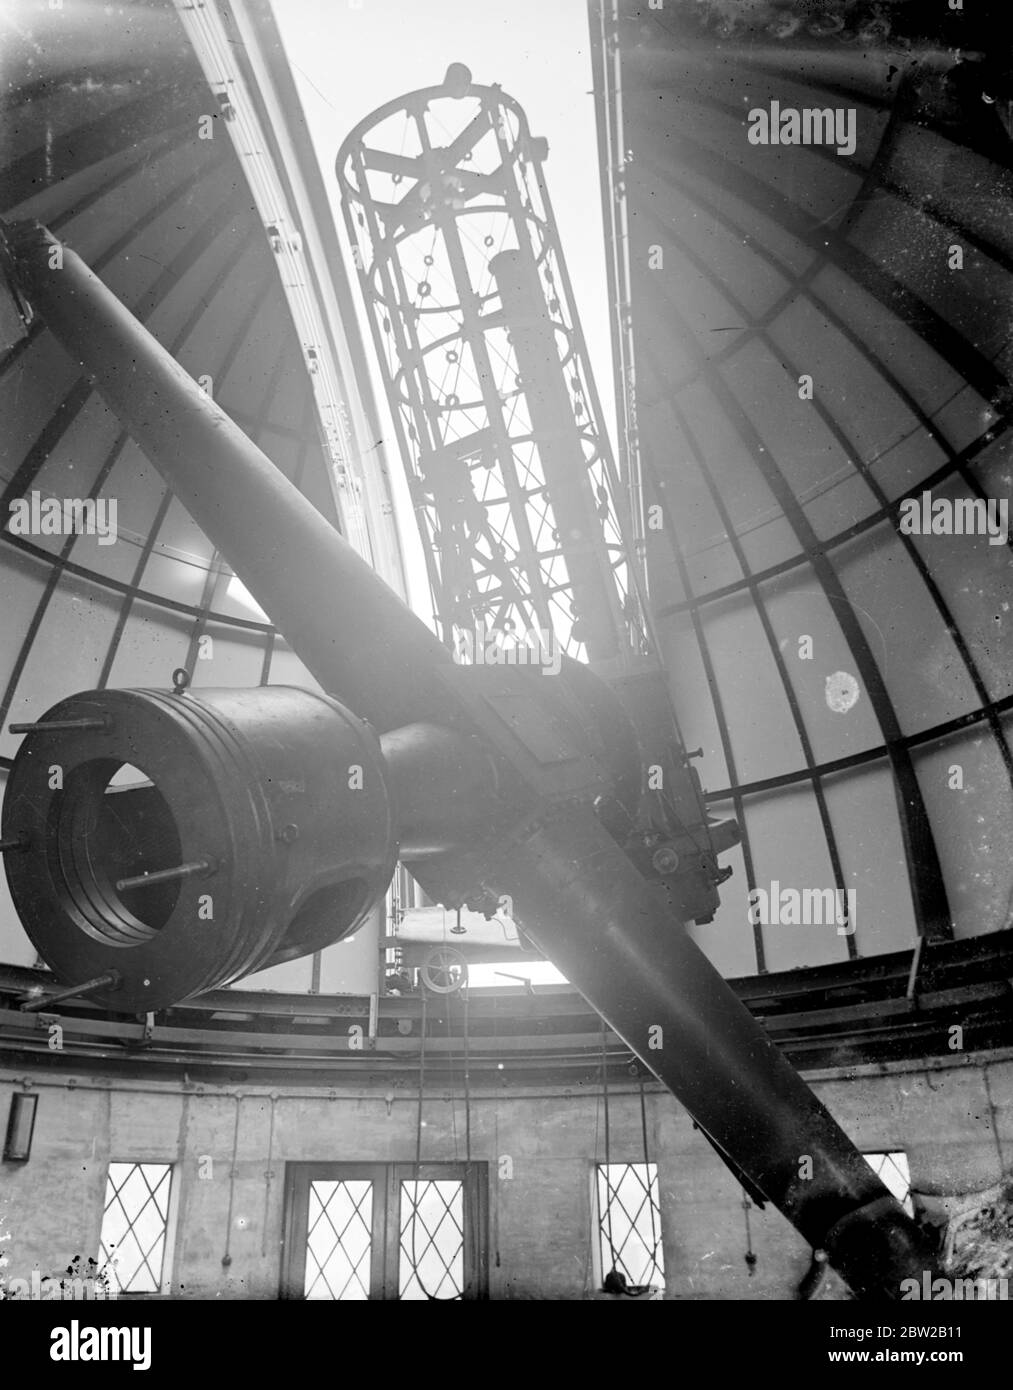 Am Greenwich Observatory in London wurde ein riesiges neues Kamerateleskop installiert, mit dem die Wärme der Sterne mittels Fotografien gemessen werden kann. Das Licht der Sterne fällt auf den Spiegel und dann mehrere Male vom Reflektor zum Reflektieren und zu einem Gefängnis, bis es schließlich die fotografische Platte erreicht. Der Spiegel des Teleskops ist 36 Zoll im Durchmesser und 6 Zoll dick und wiegt 500lb. Es dauerte zwei Jahre, um zu machen. Die Kuppel hat einen Durchmesser von 34 Fuß und der Beobachter kann alle komplizierten Instrumente mit einem Knopfdruck steuern. 17. April 1934 Stockfoto